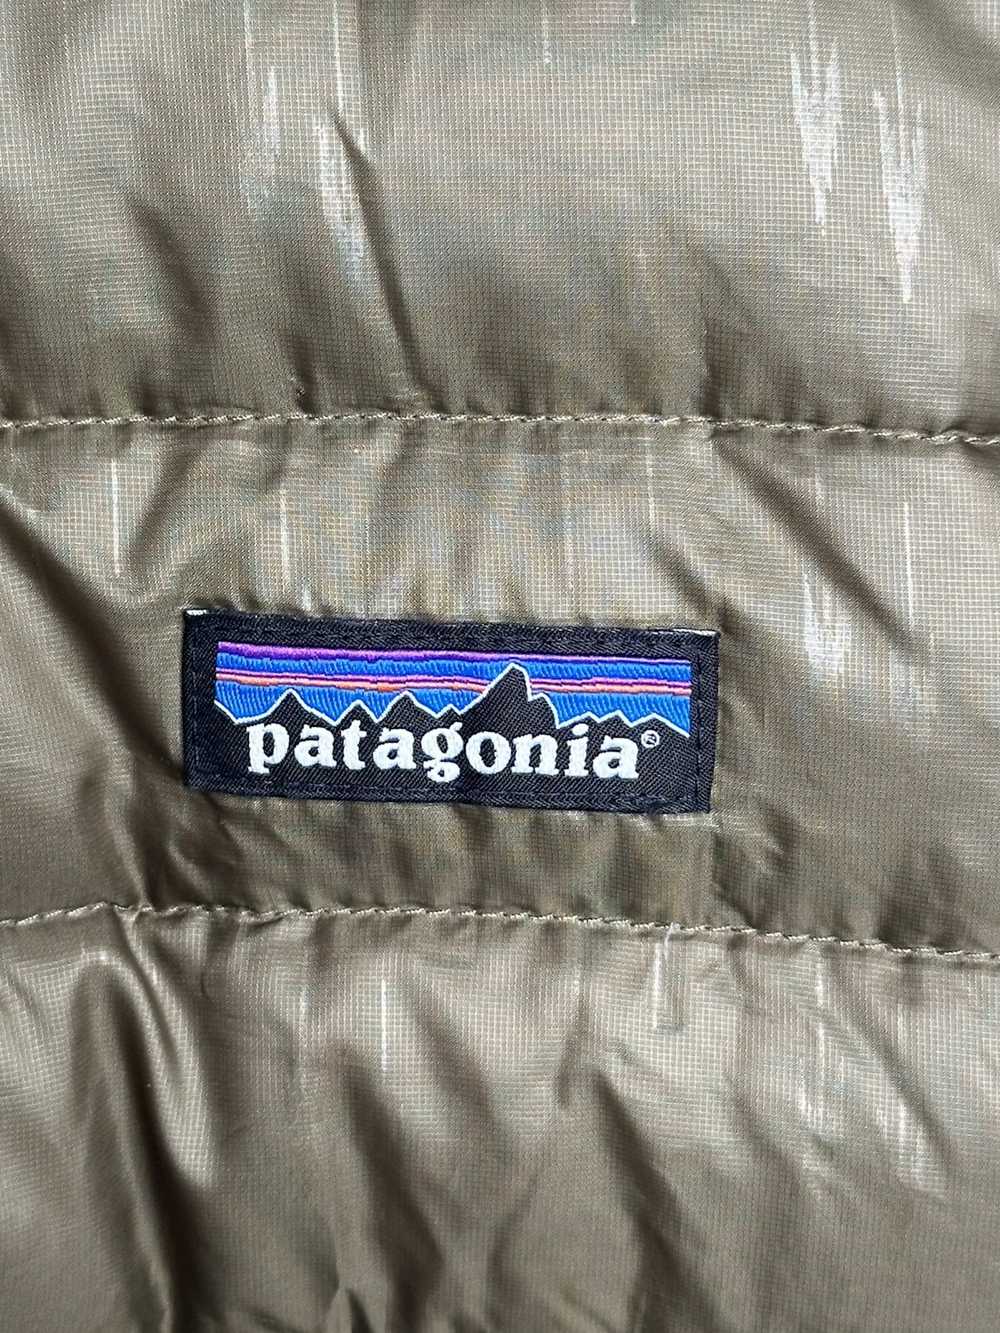 Patagonia Men’s Patagonia Jacket - Green XXL - image 4